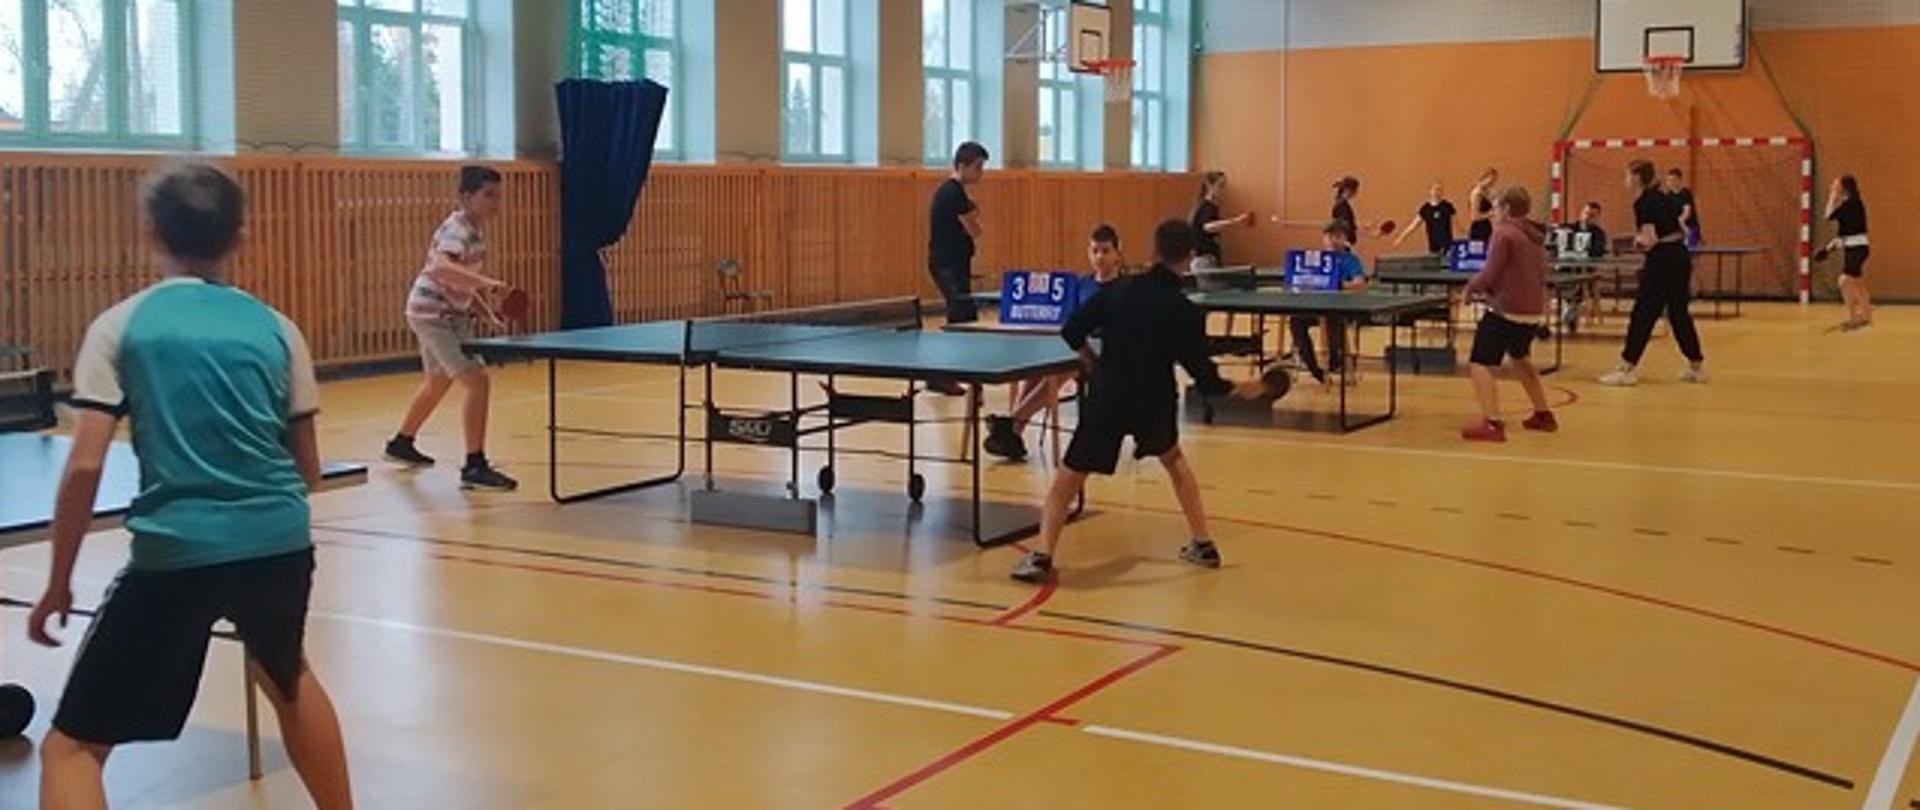 Uczestnicy w trakcie zawodów - rozgrywki przy stołach do tenisa